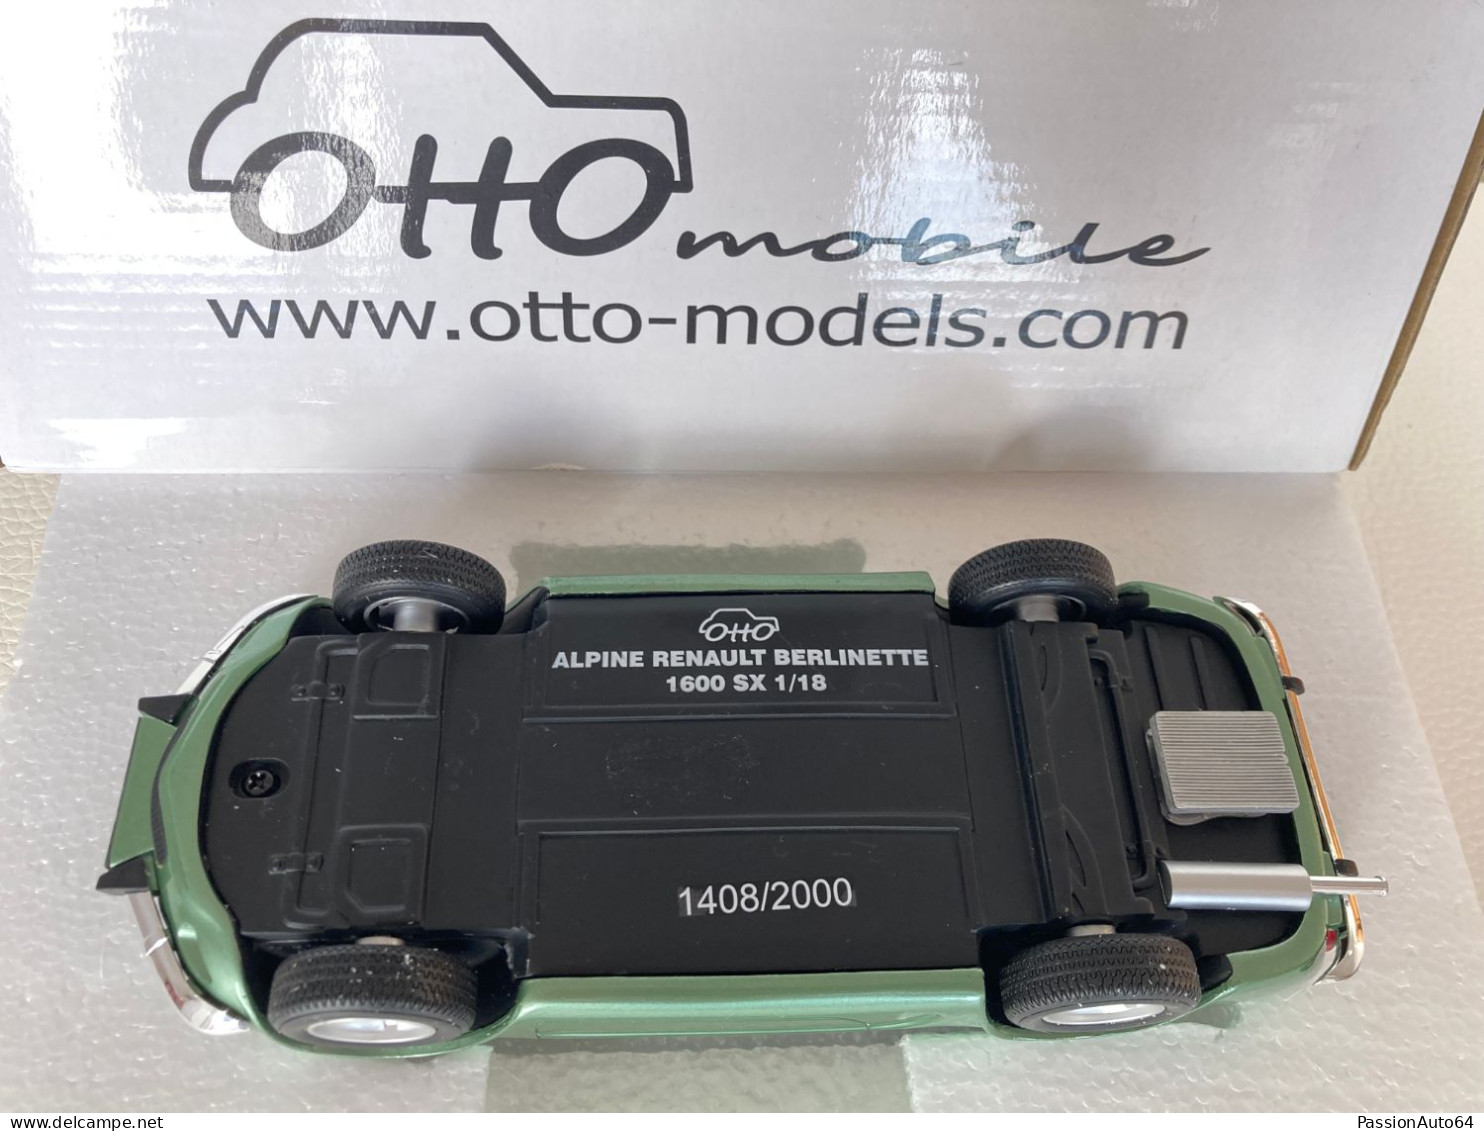 1/18 Otto Mobile Alpine A 110 1600 SX no Solido Norev Hot Wheels Spark Kyosho Minichamps Autoart CMC BBR CMR